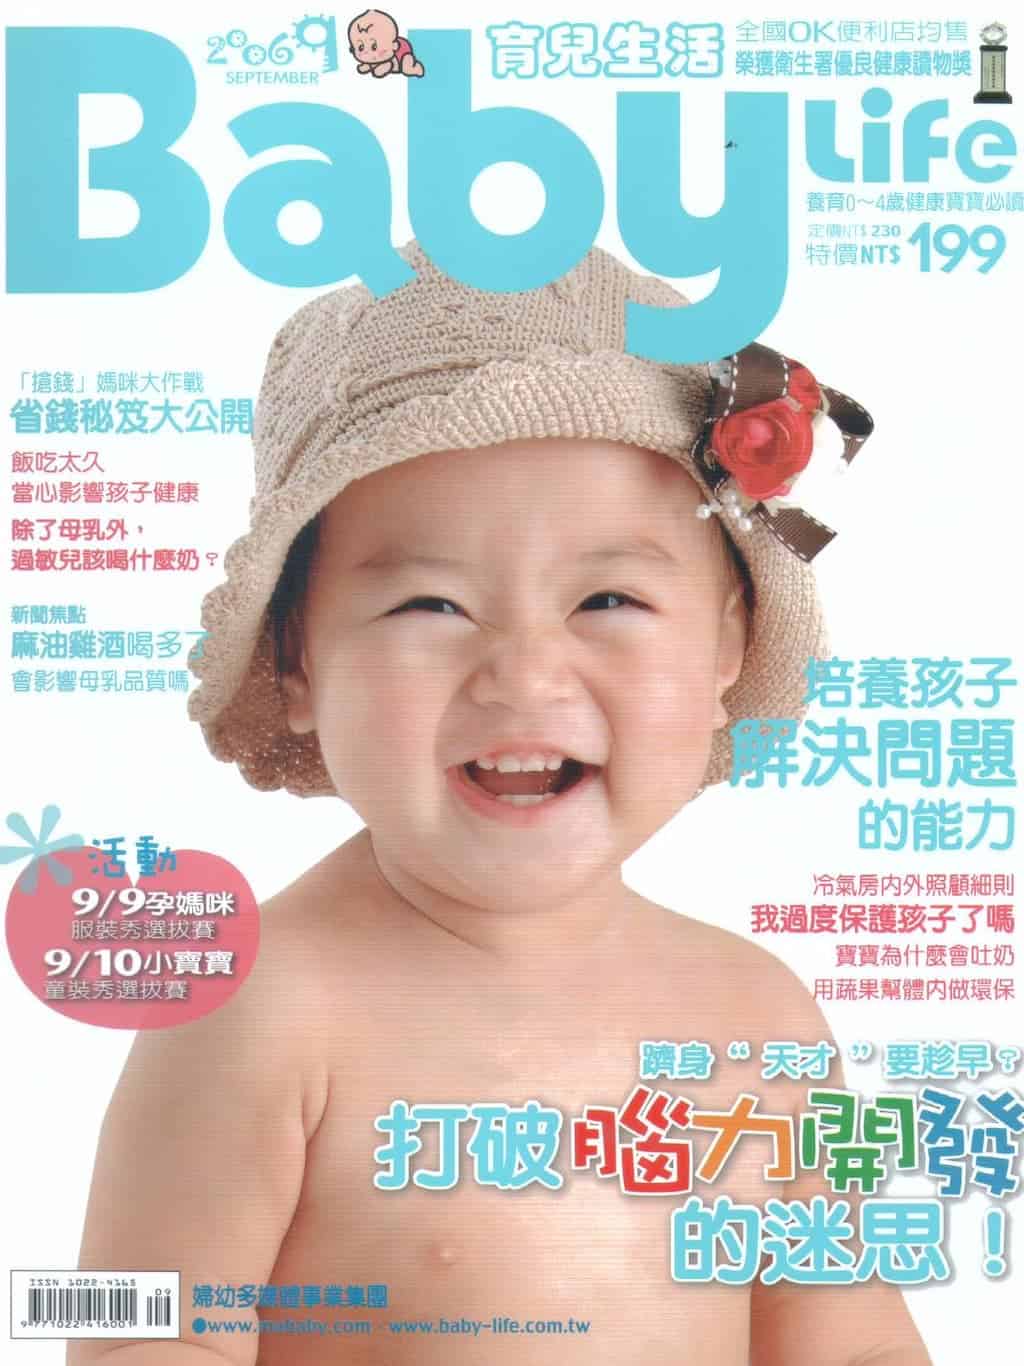 牙齒美白重展迷人笑容Baby-life雜誌-柏登牙醫牙齒美白秘笈-1